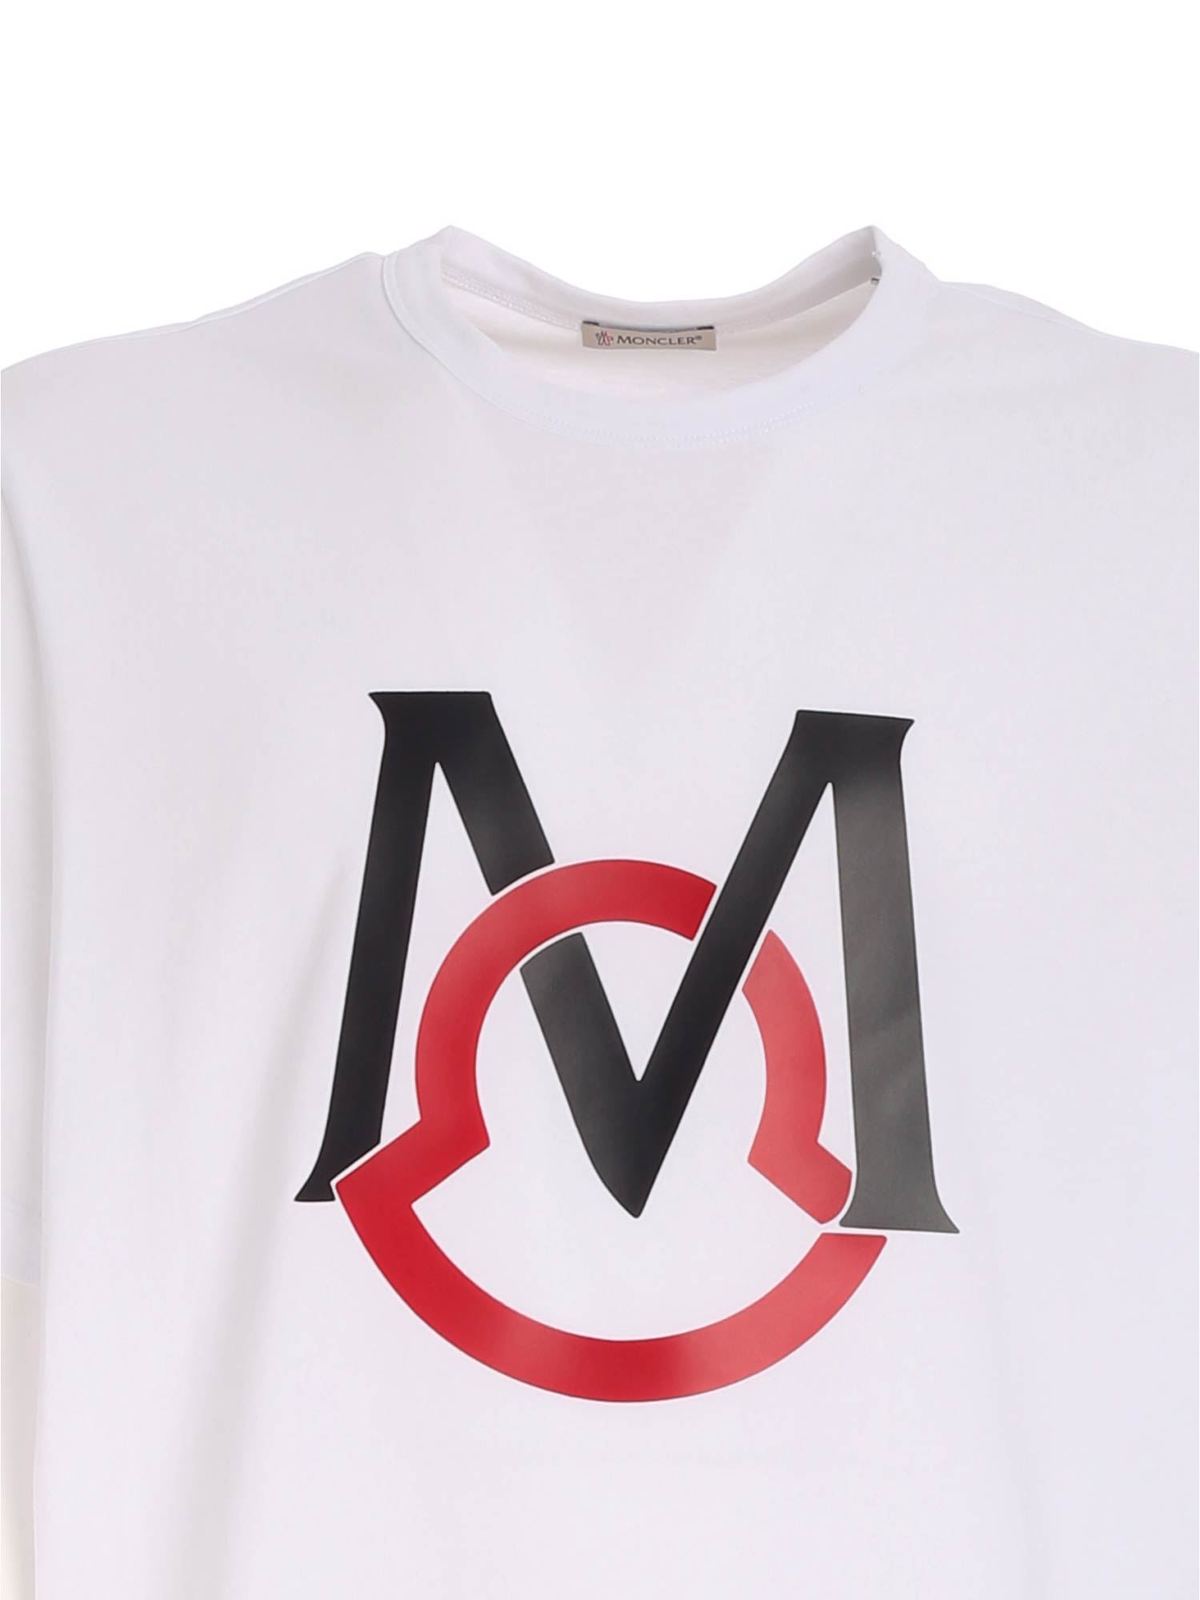 モンクレール  Tシャツ  M